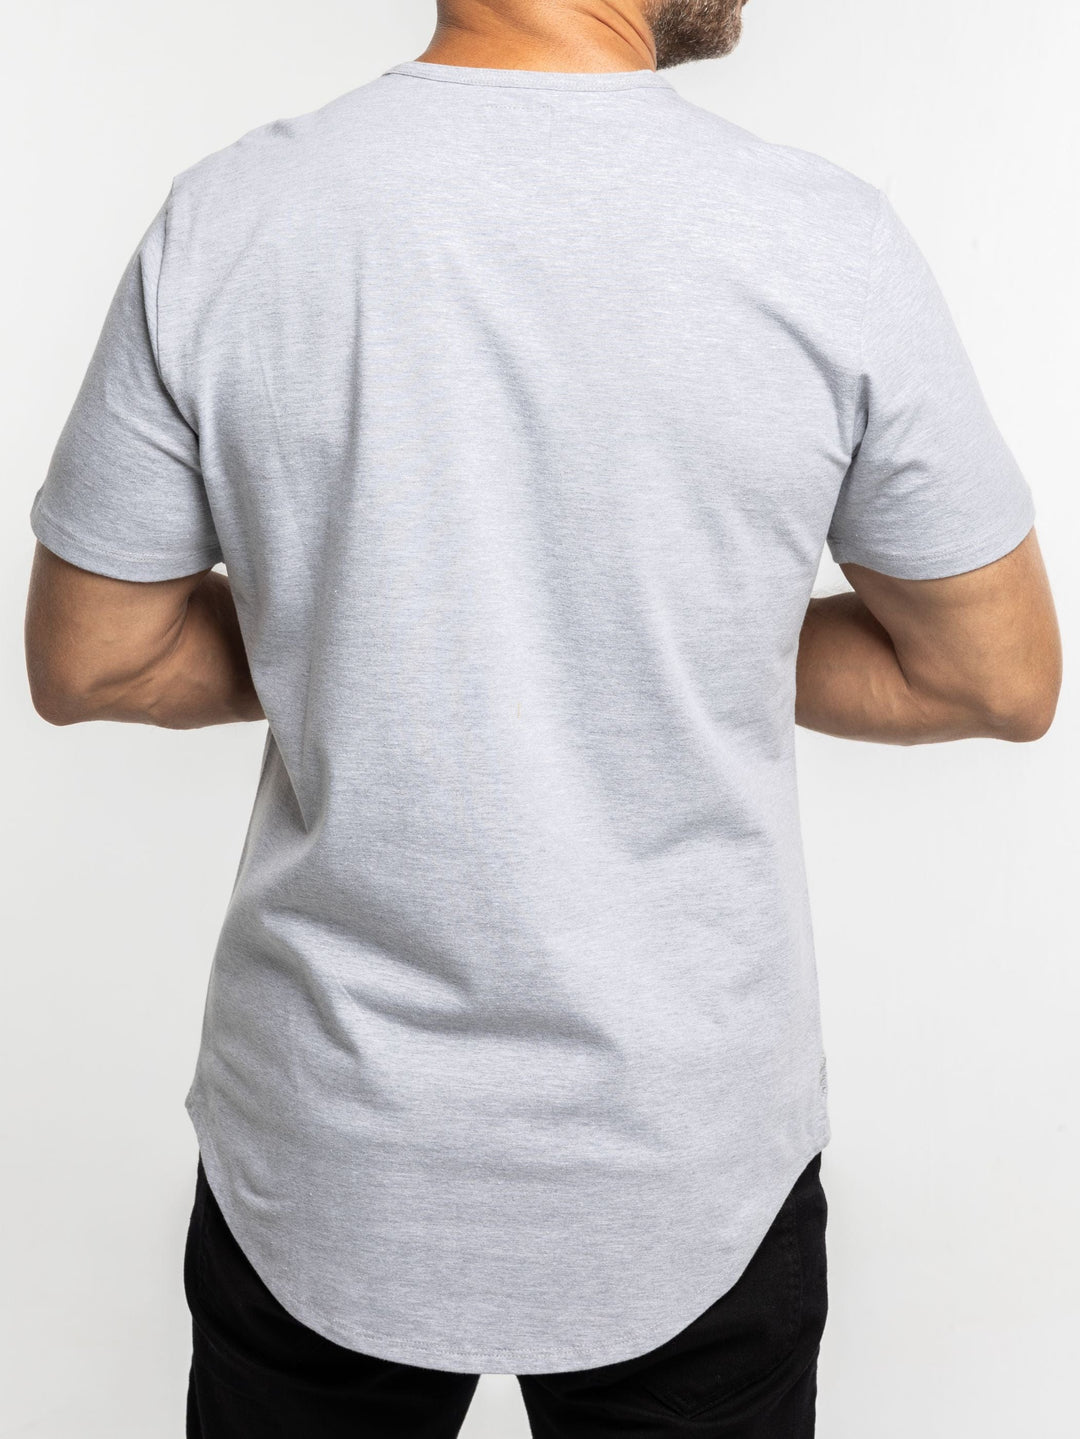 Zhivago x Nuuk Men T-shirt Grey Curved Hem T-Shirt: SLS Comfort